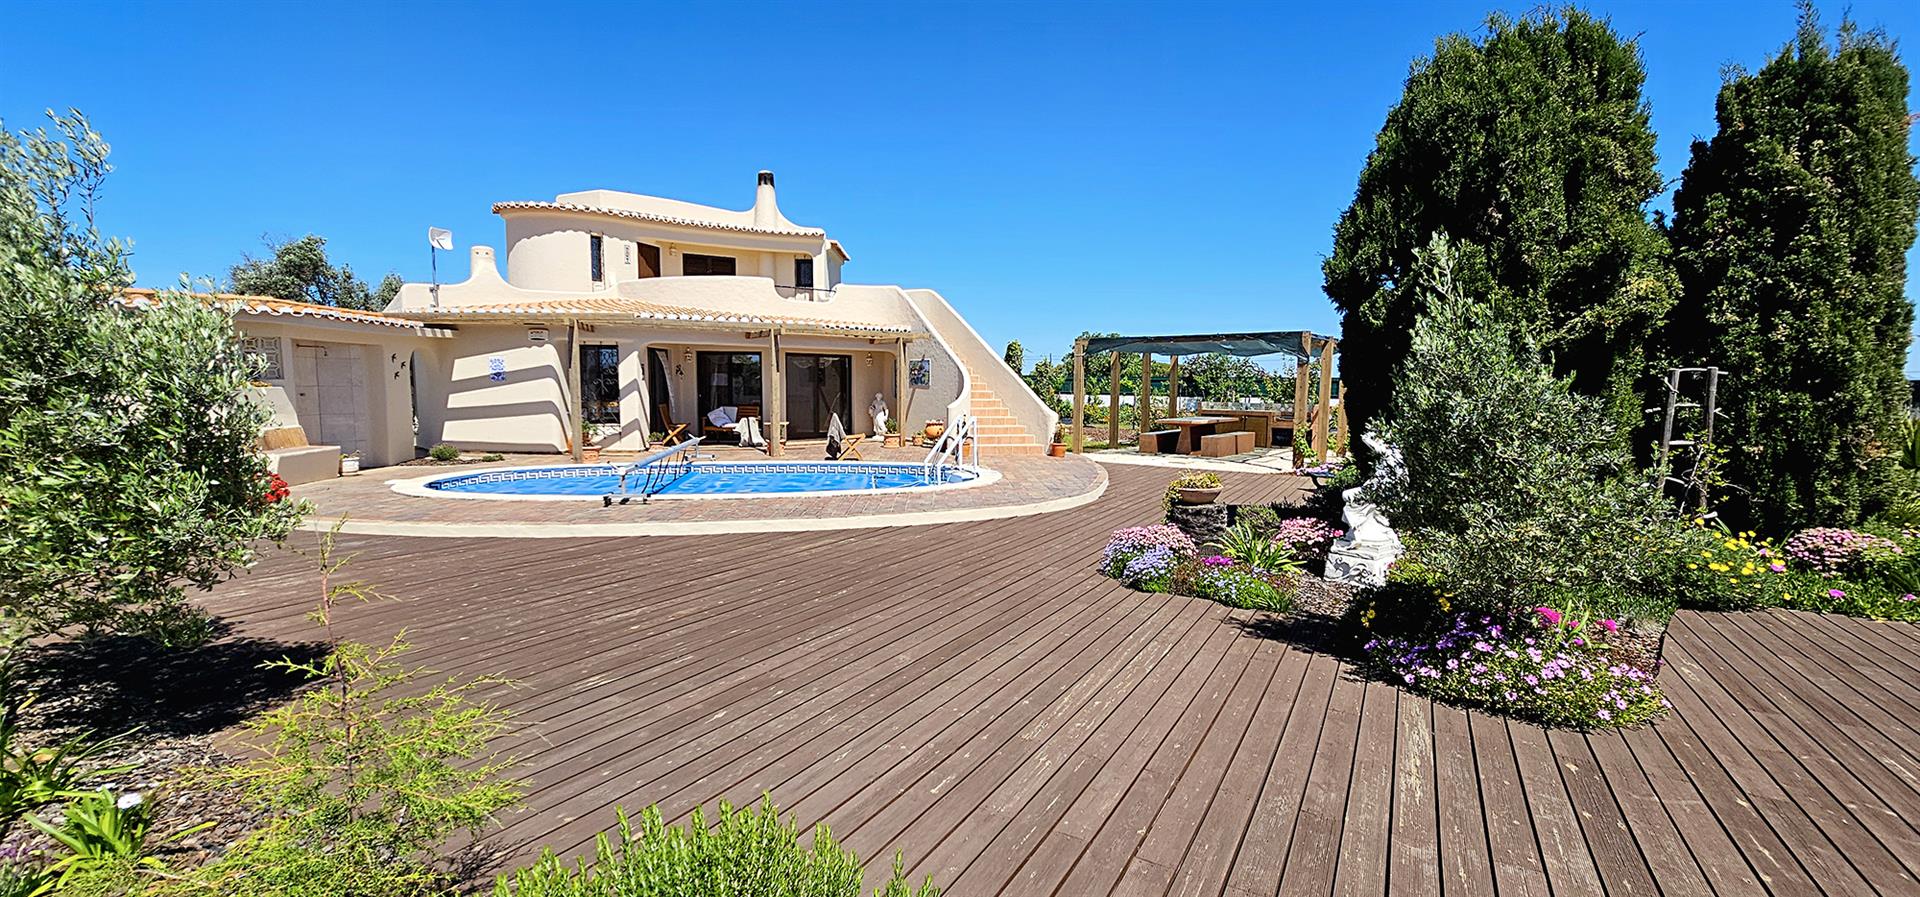 Witamy w Twoim przyszłym domu w pięknym Algarve